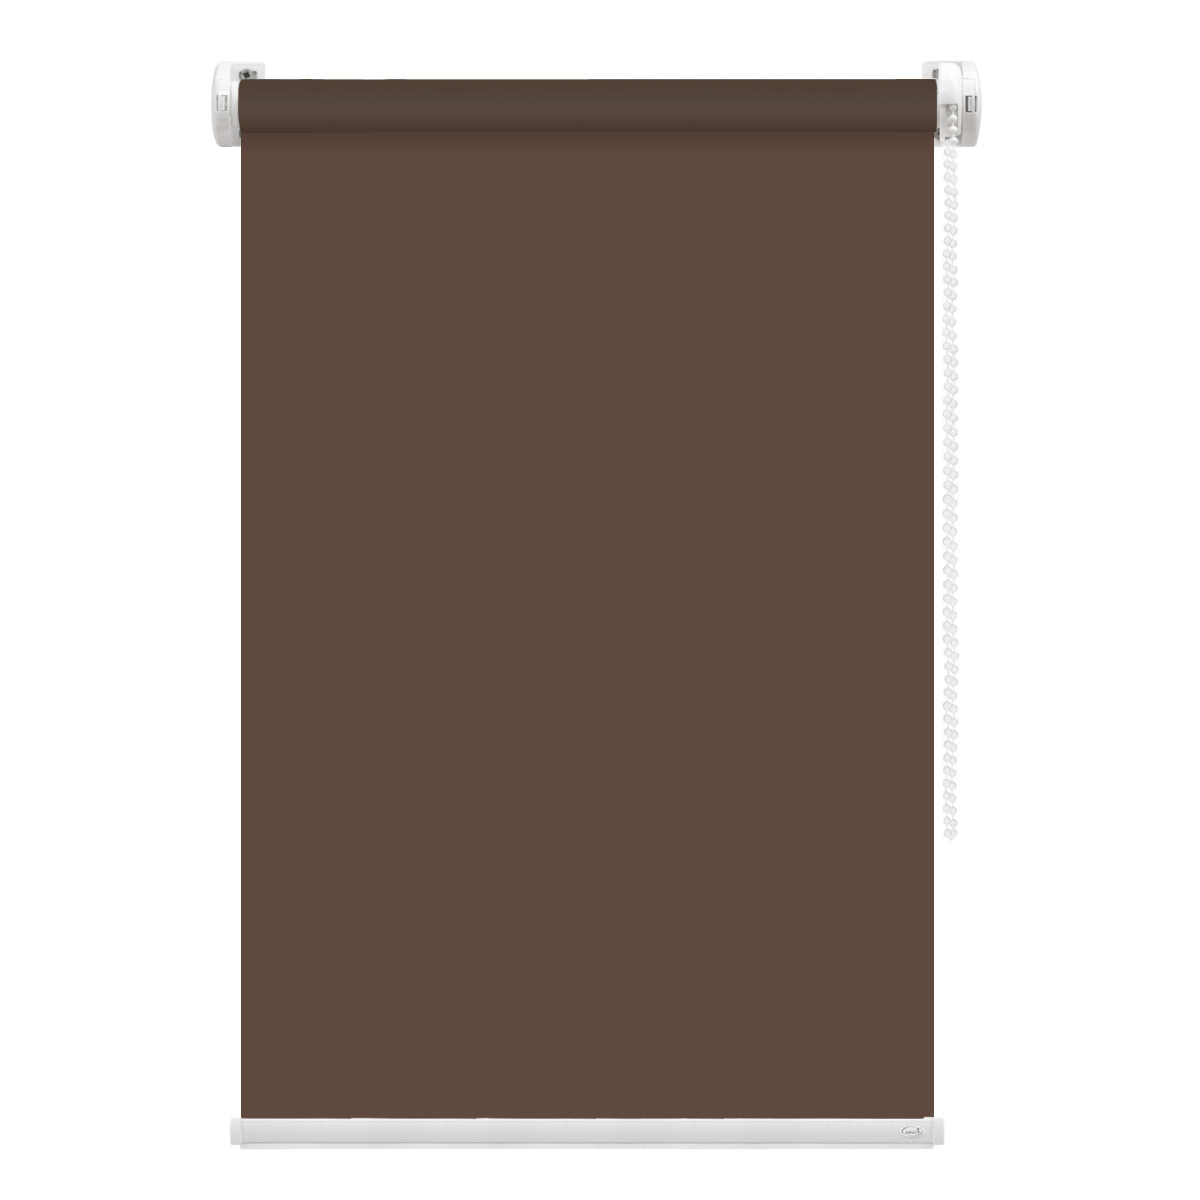 Рулонная штора FixLine Amigo Basic коричневая 70х160 см рулонная штора fixline amigo basic коричневая 65х160 см